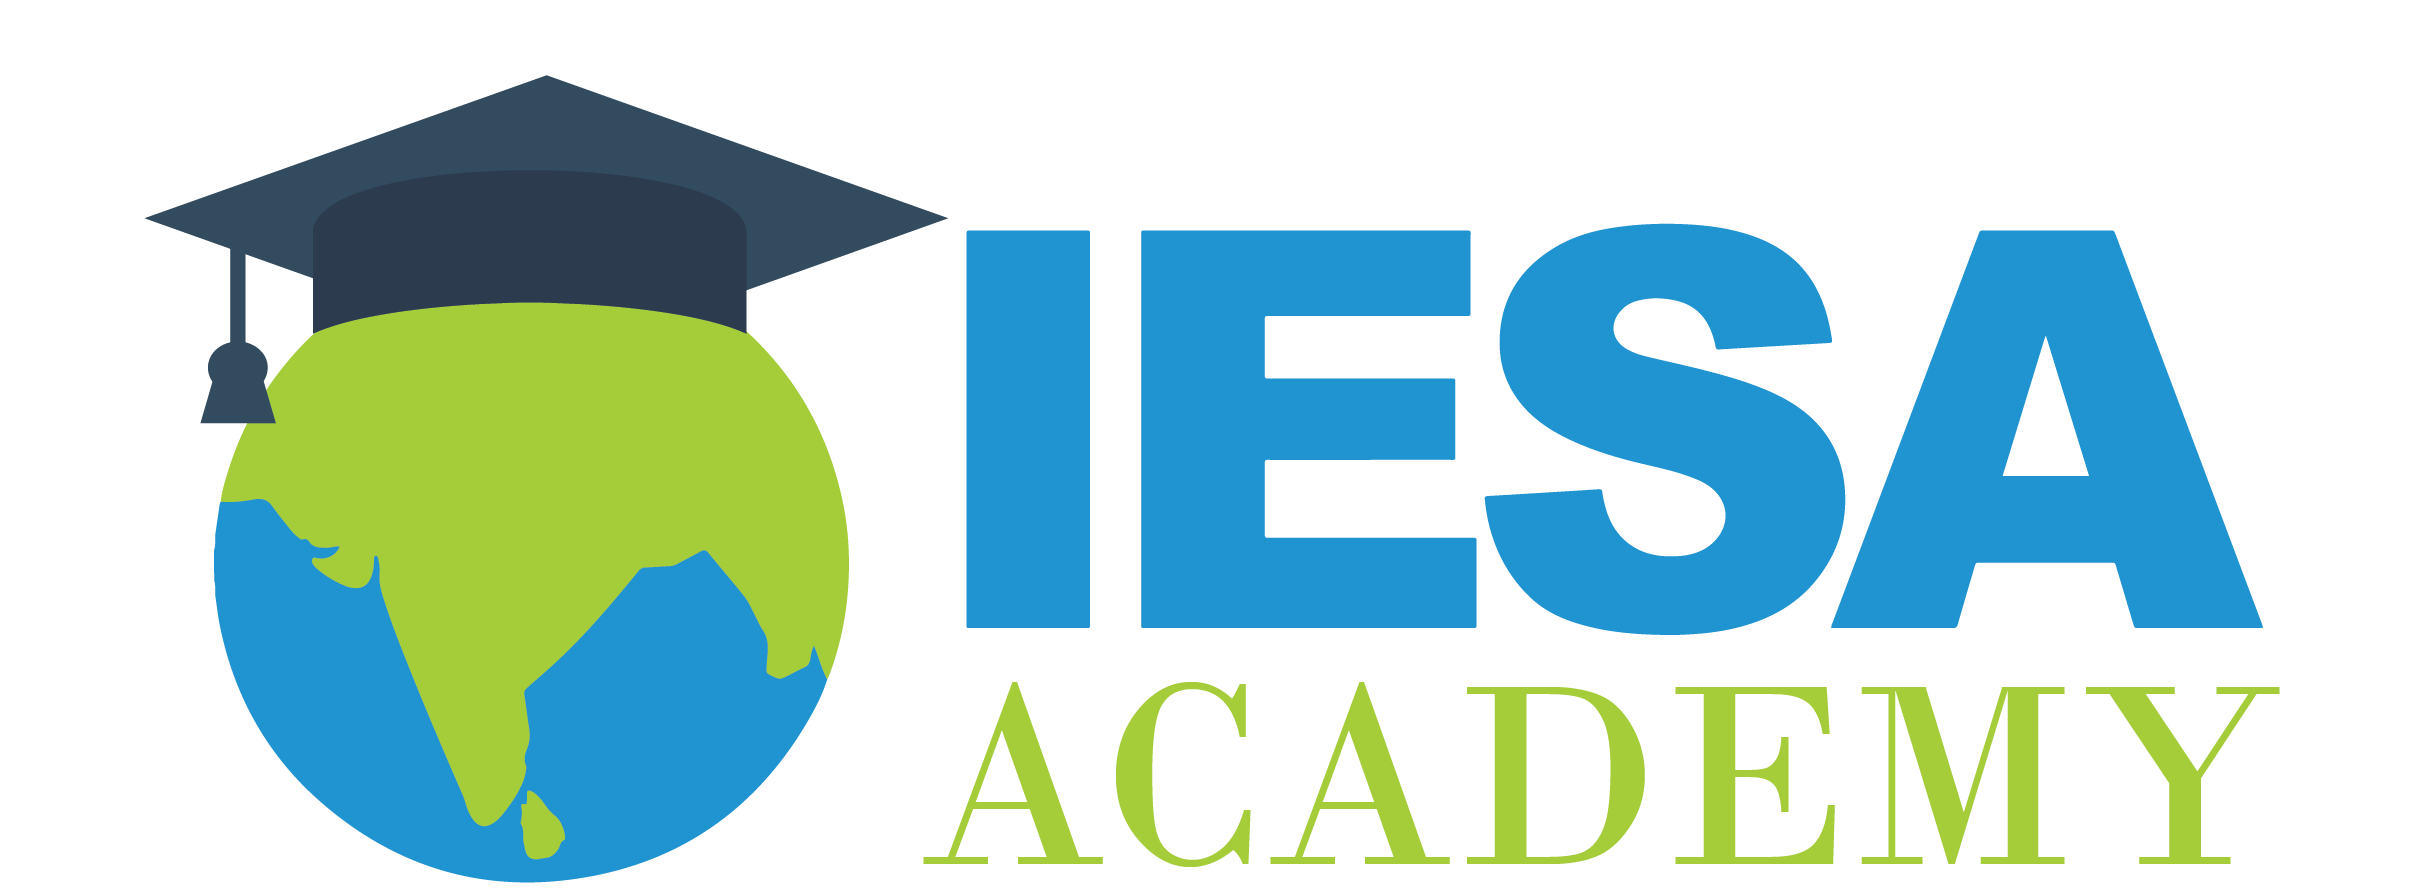 IESA Academy LMS